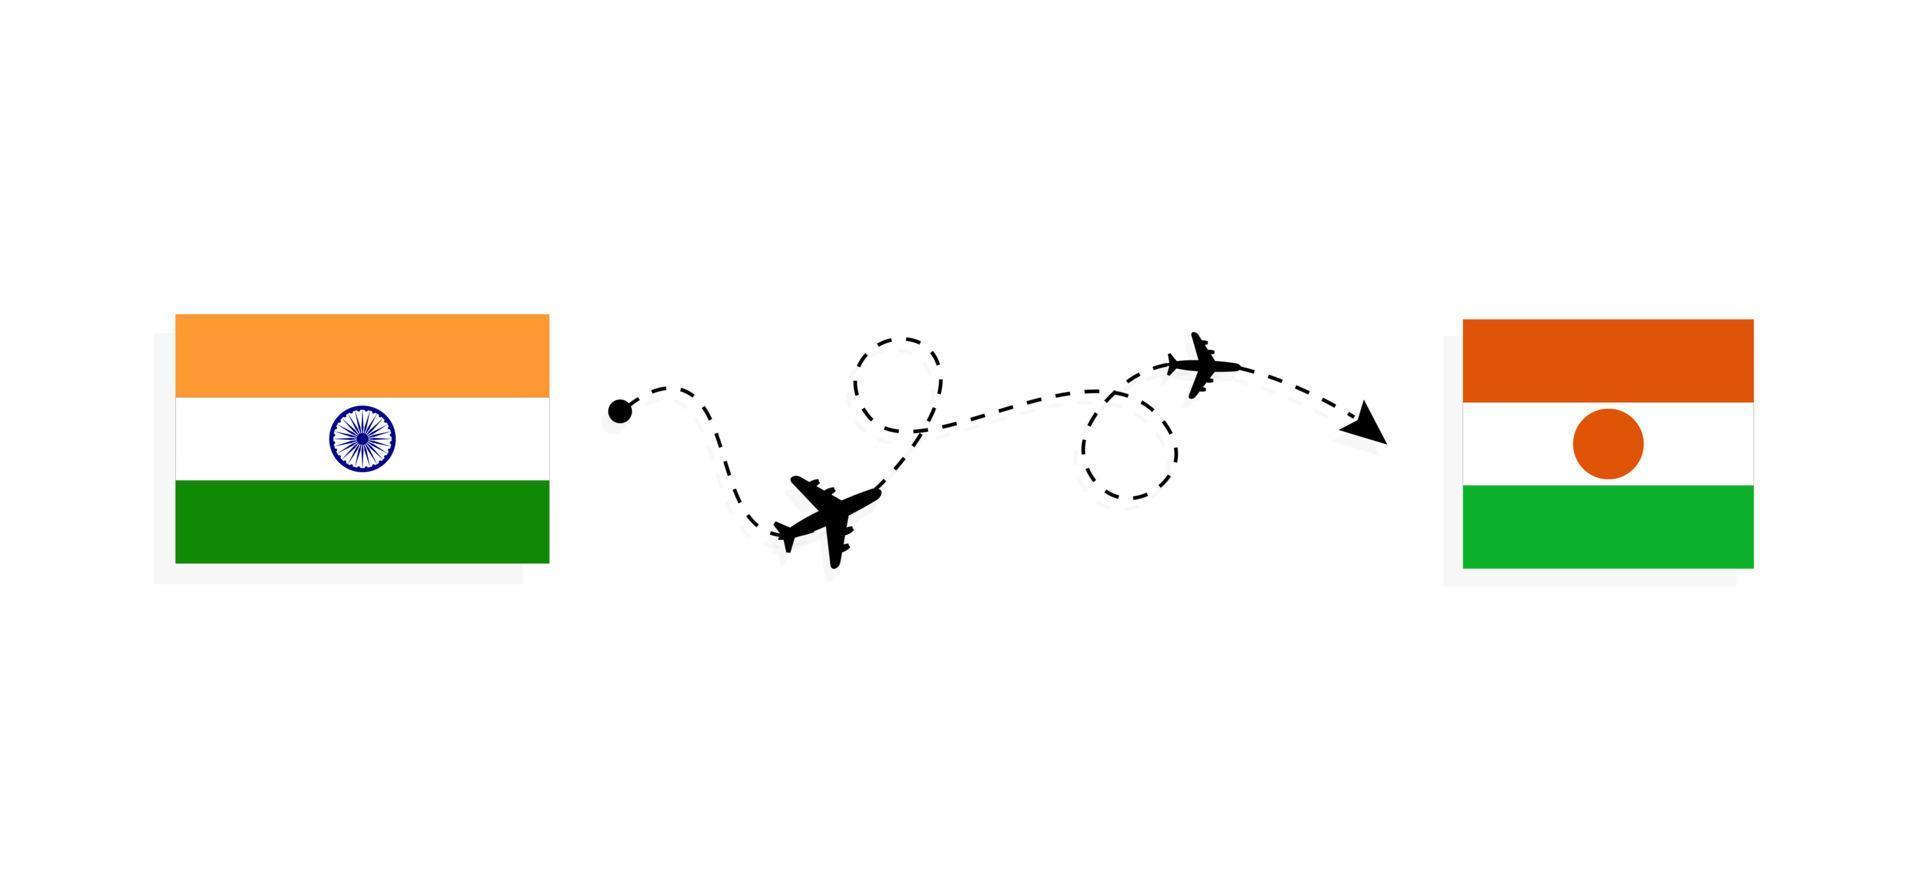 vol et voyage de l'inde au niger par concept de voyage en avion de passagers vecteur